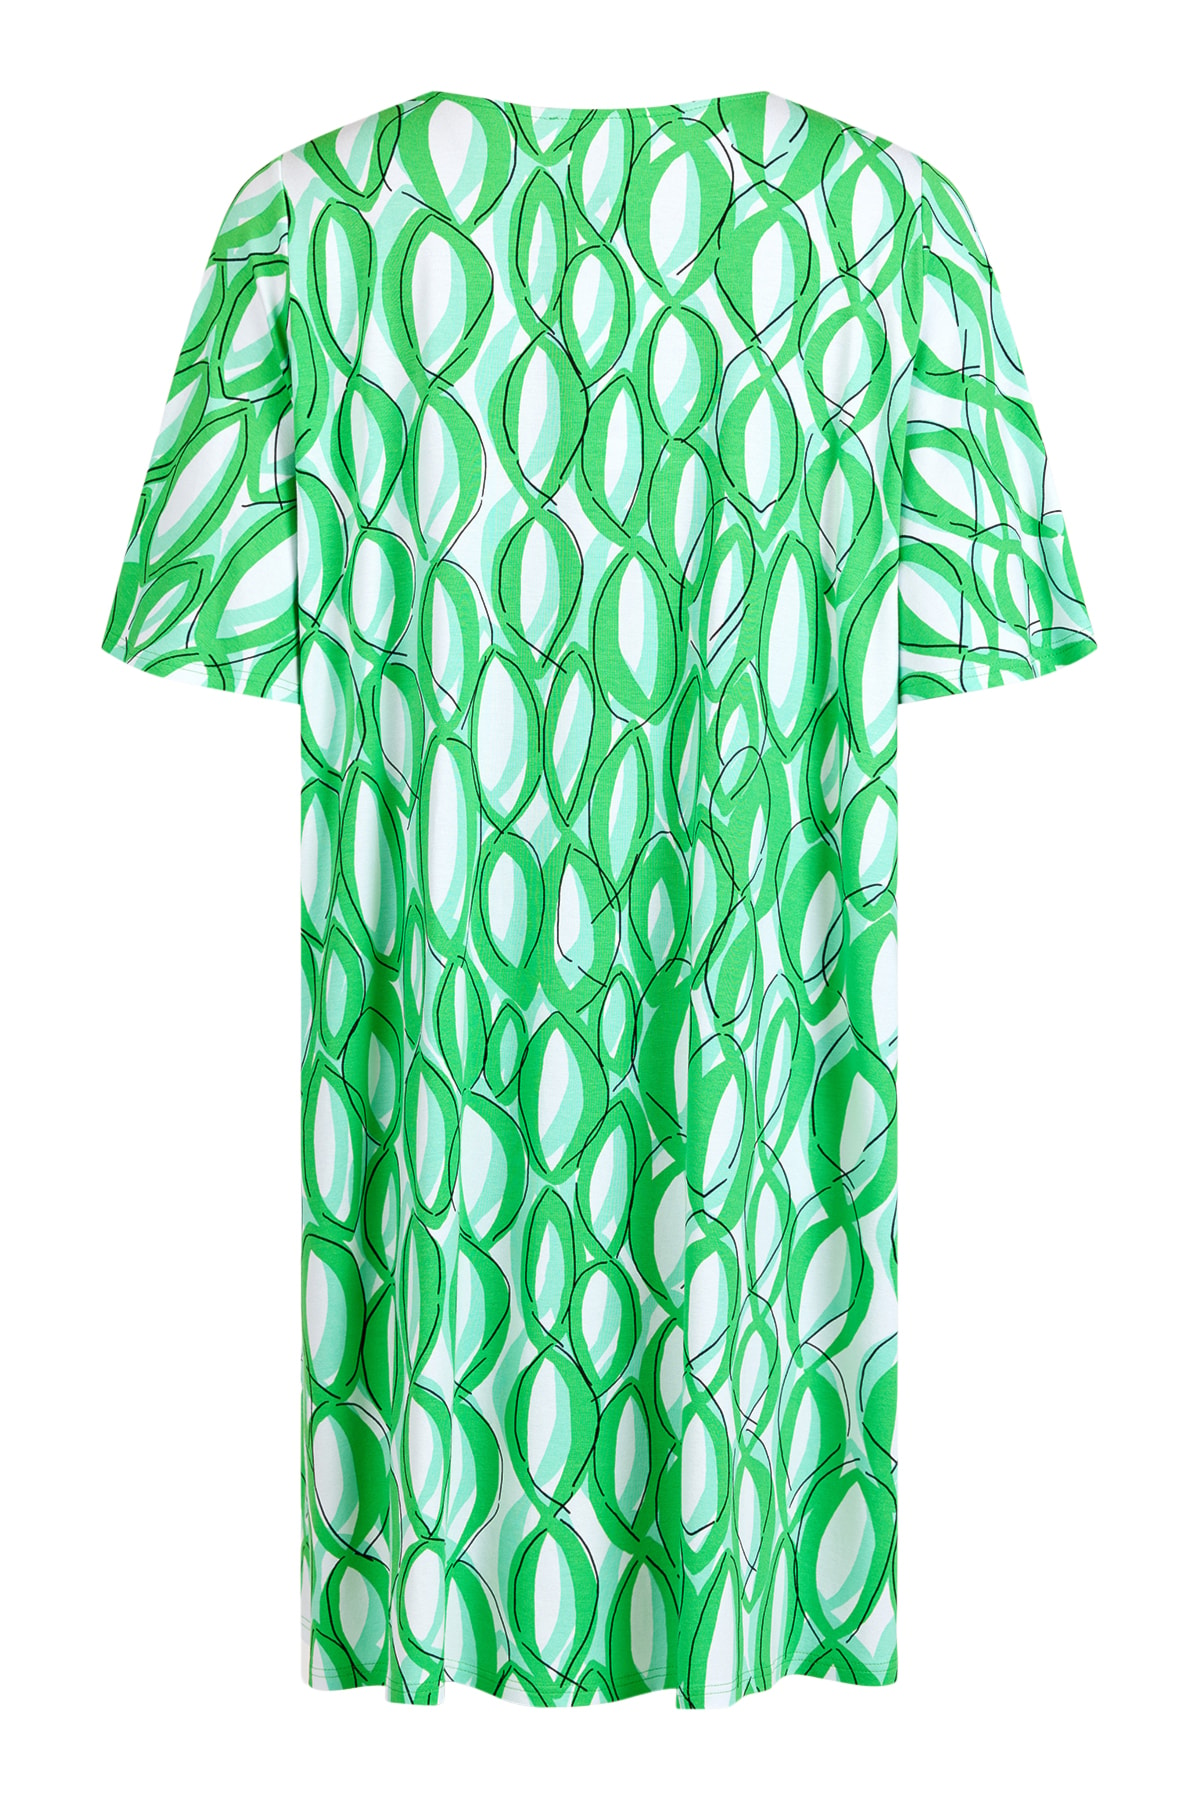 grön jerseyklänning/tunika från Noen